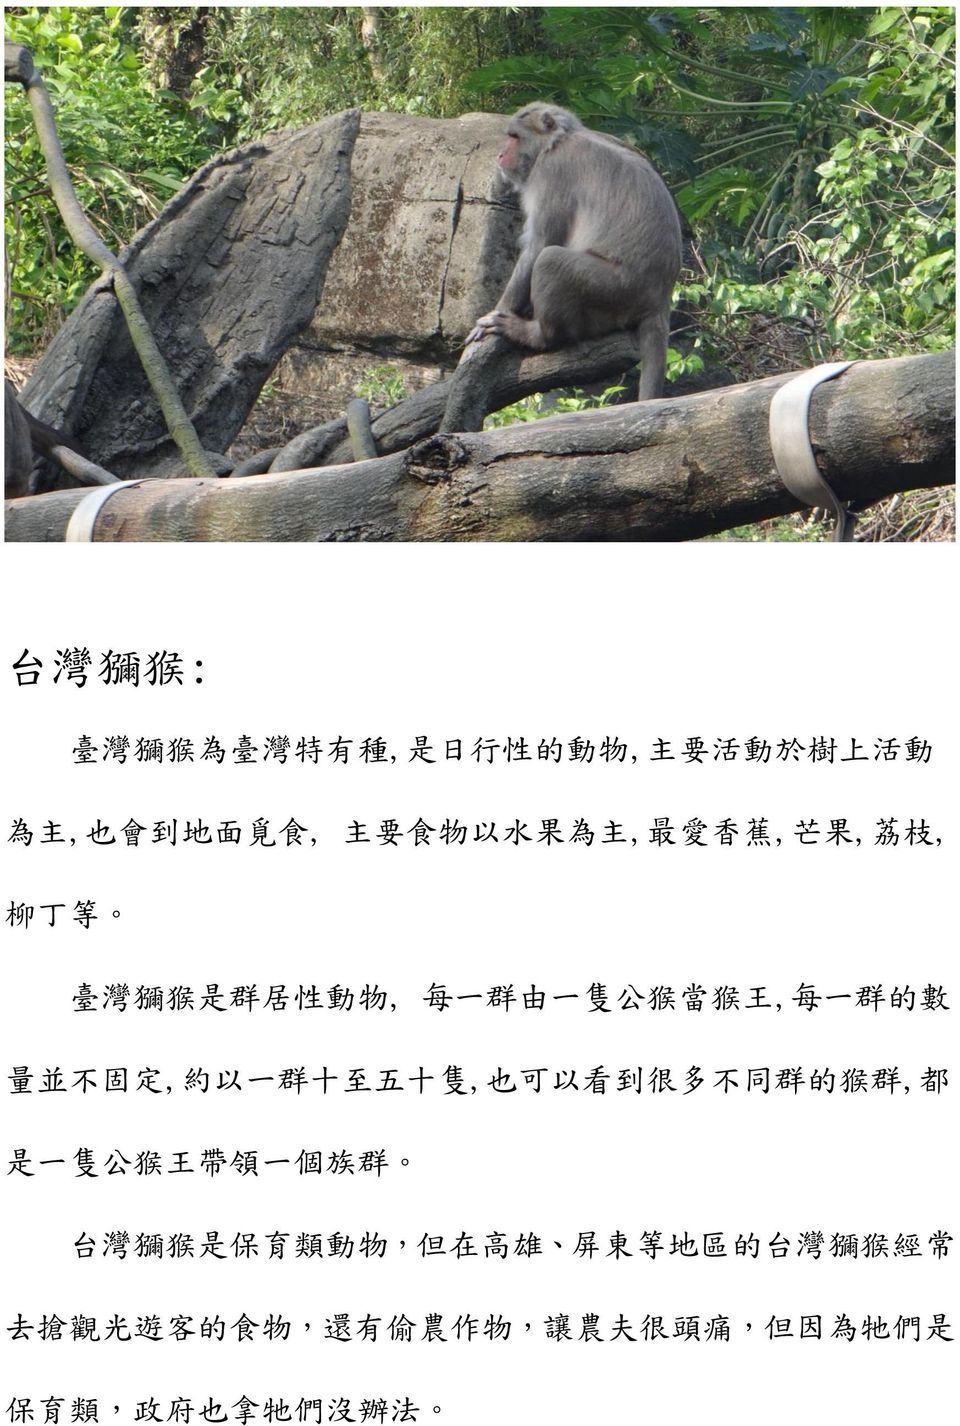 群 十 至 五 十 隻, 也 可 以 看 到 很 多 不 同 群 的 猴 群, 都 是 一 隻 公 猴 王 帶 領 一 個 族 群 台 灣 獼 猴 是 保 育 類 動 物, 但 在 高 雄 屏 東